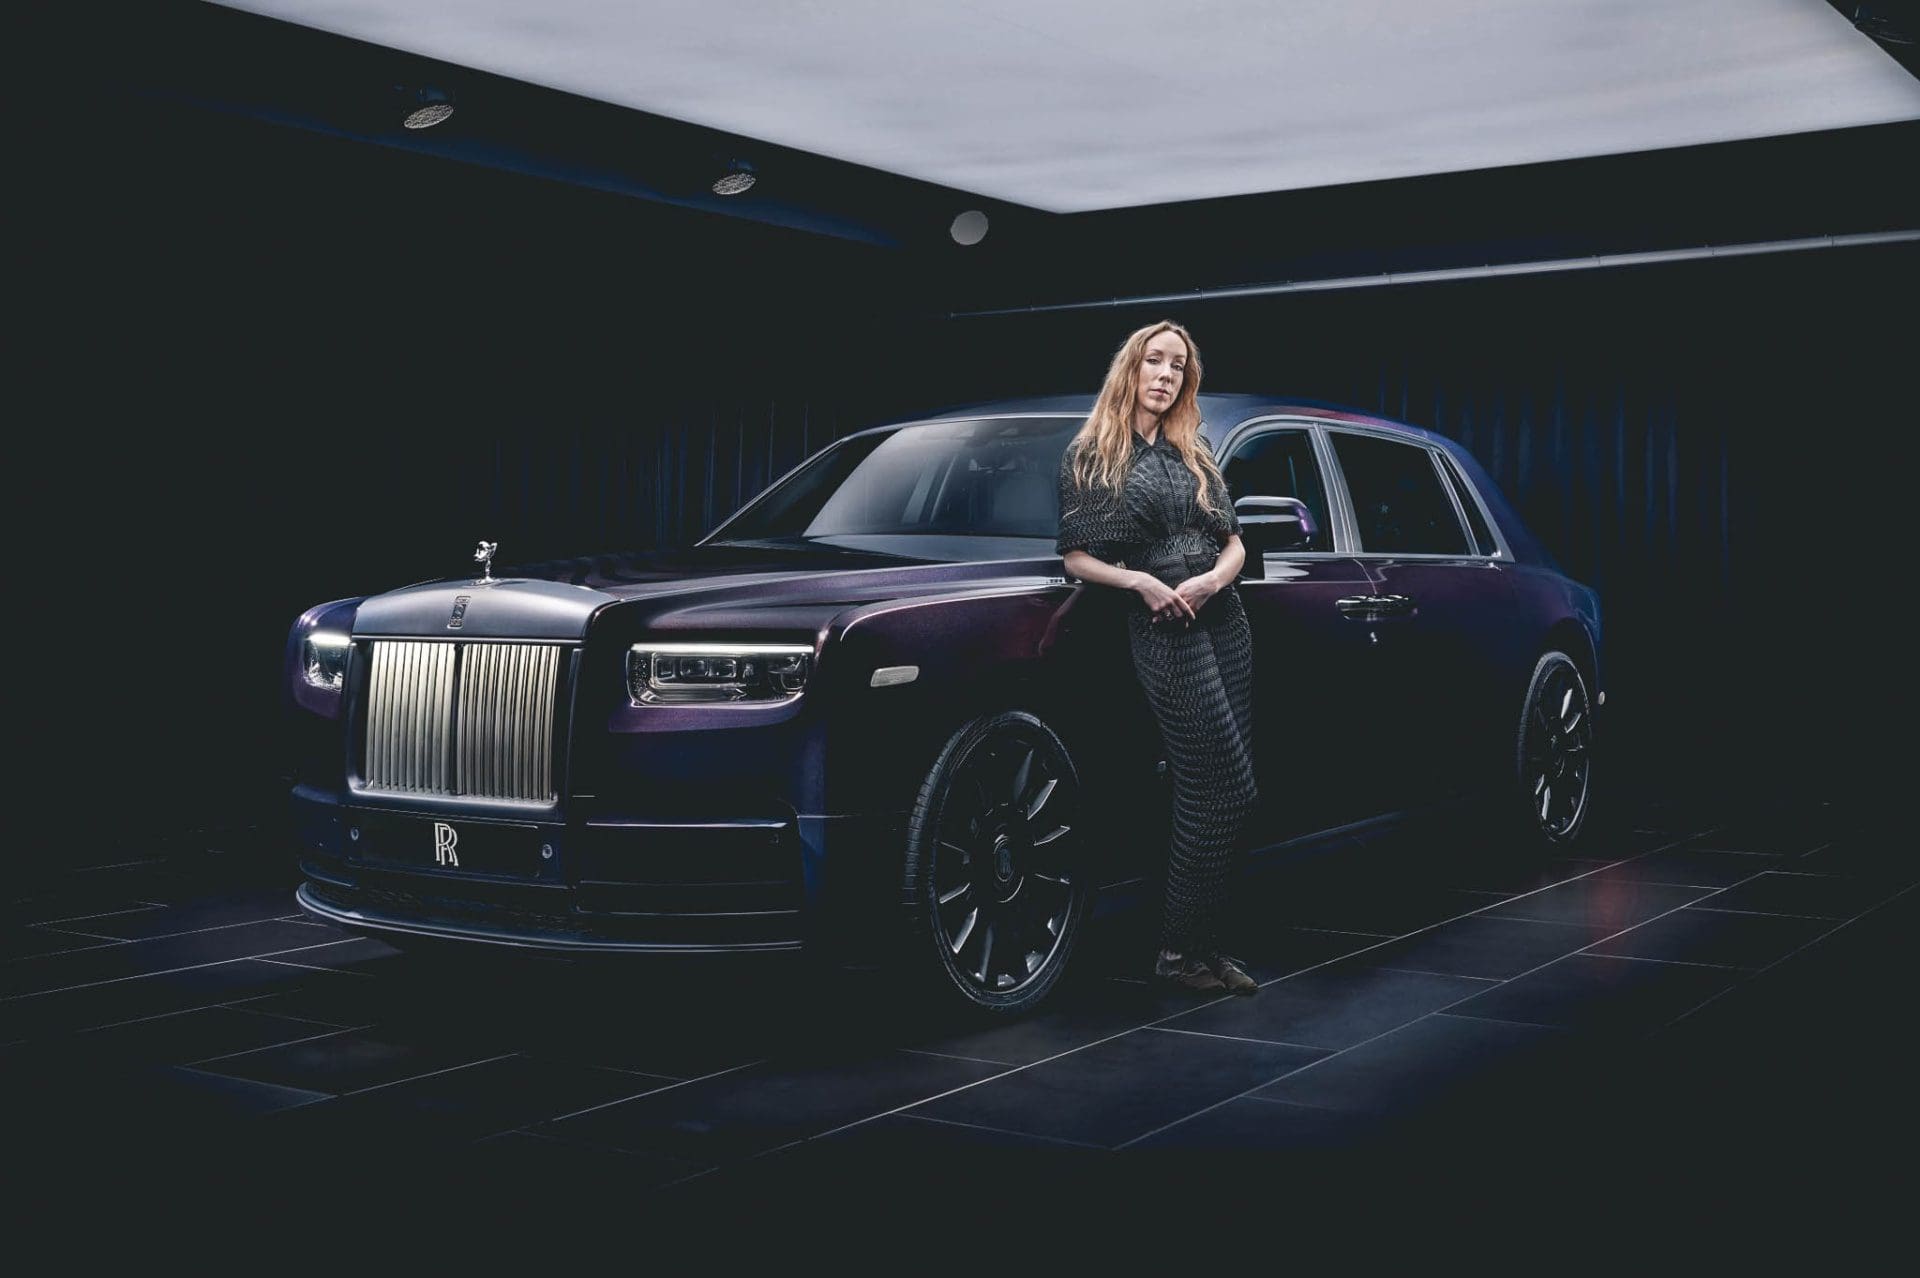 Rolls Royce Phantom Syntopia, Nederlandse modekoningin maakt de <strong>Rolls Royce onder de Phantoms</strong>